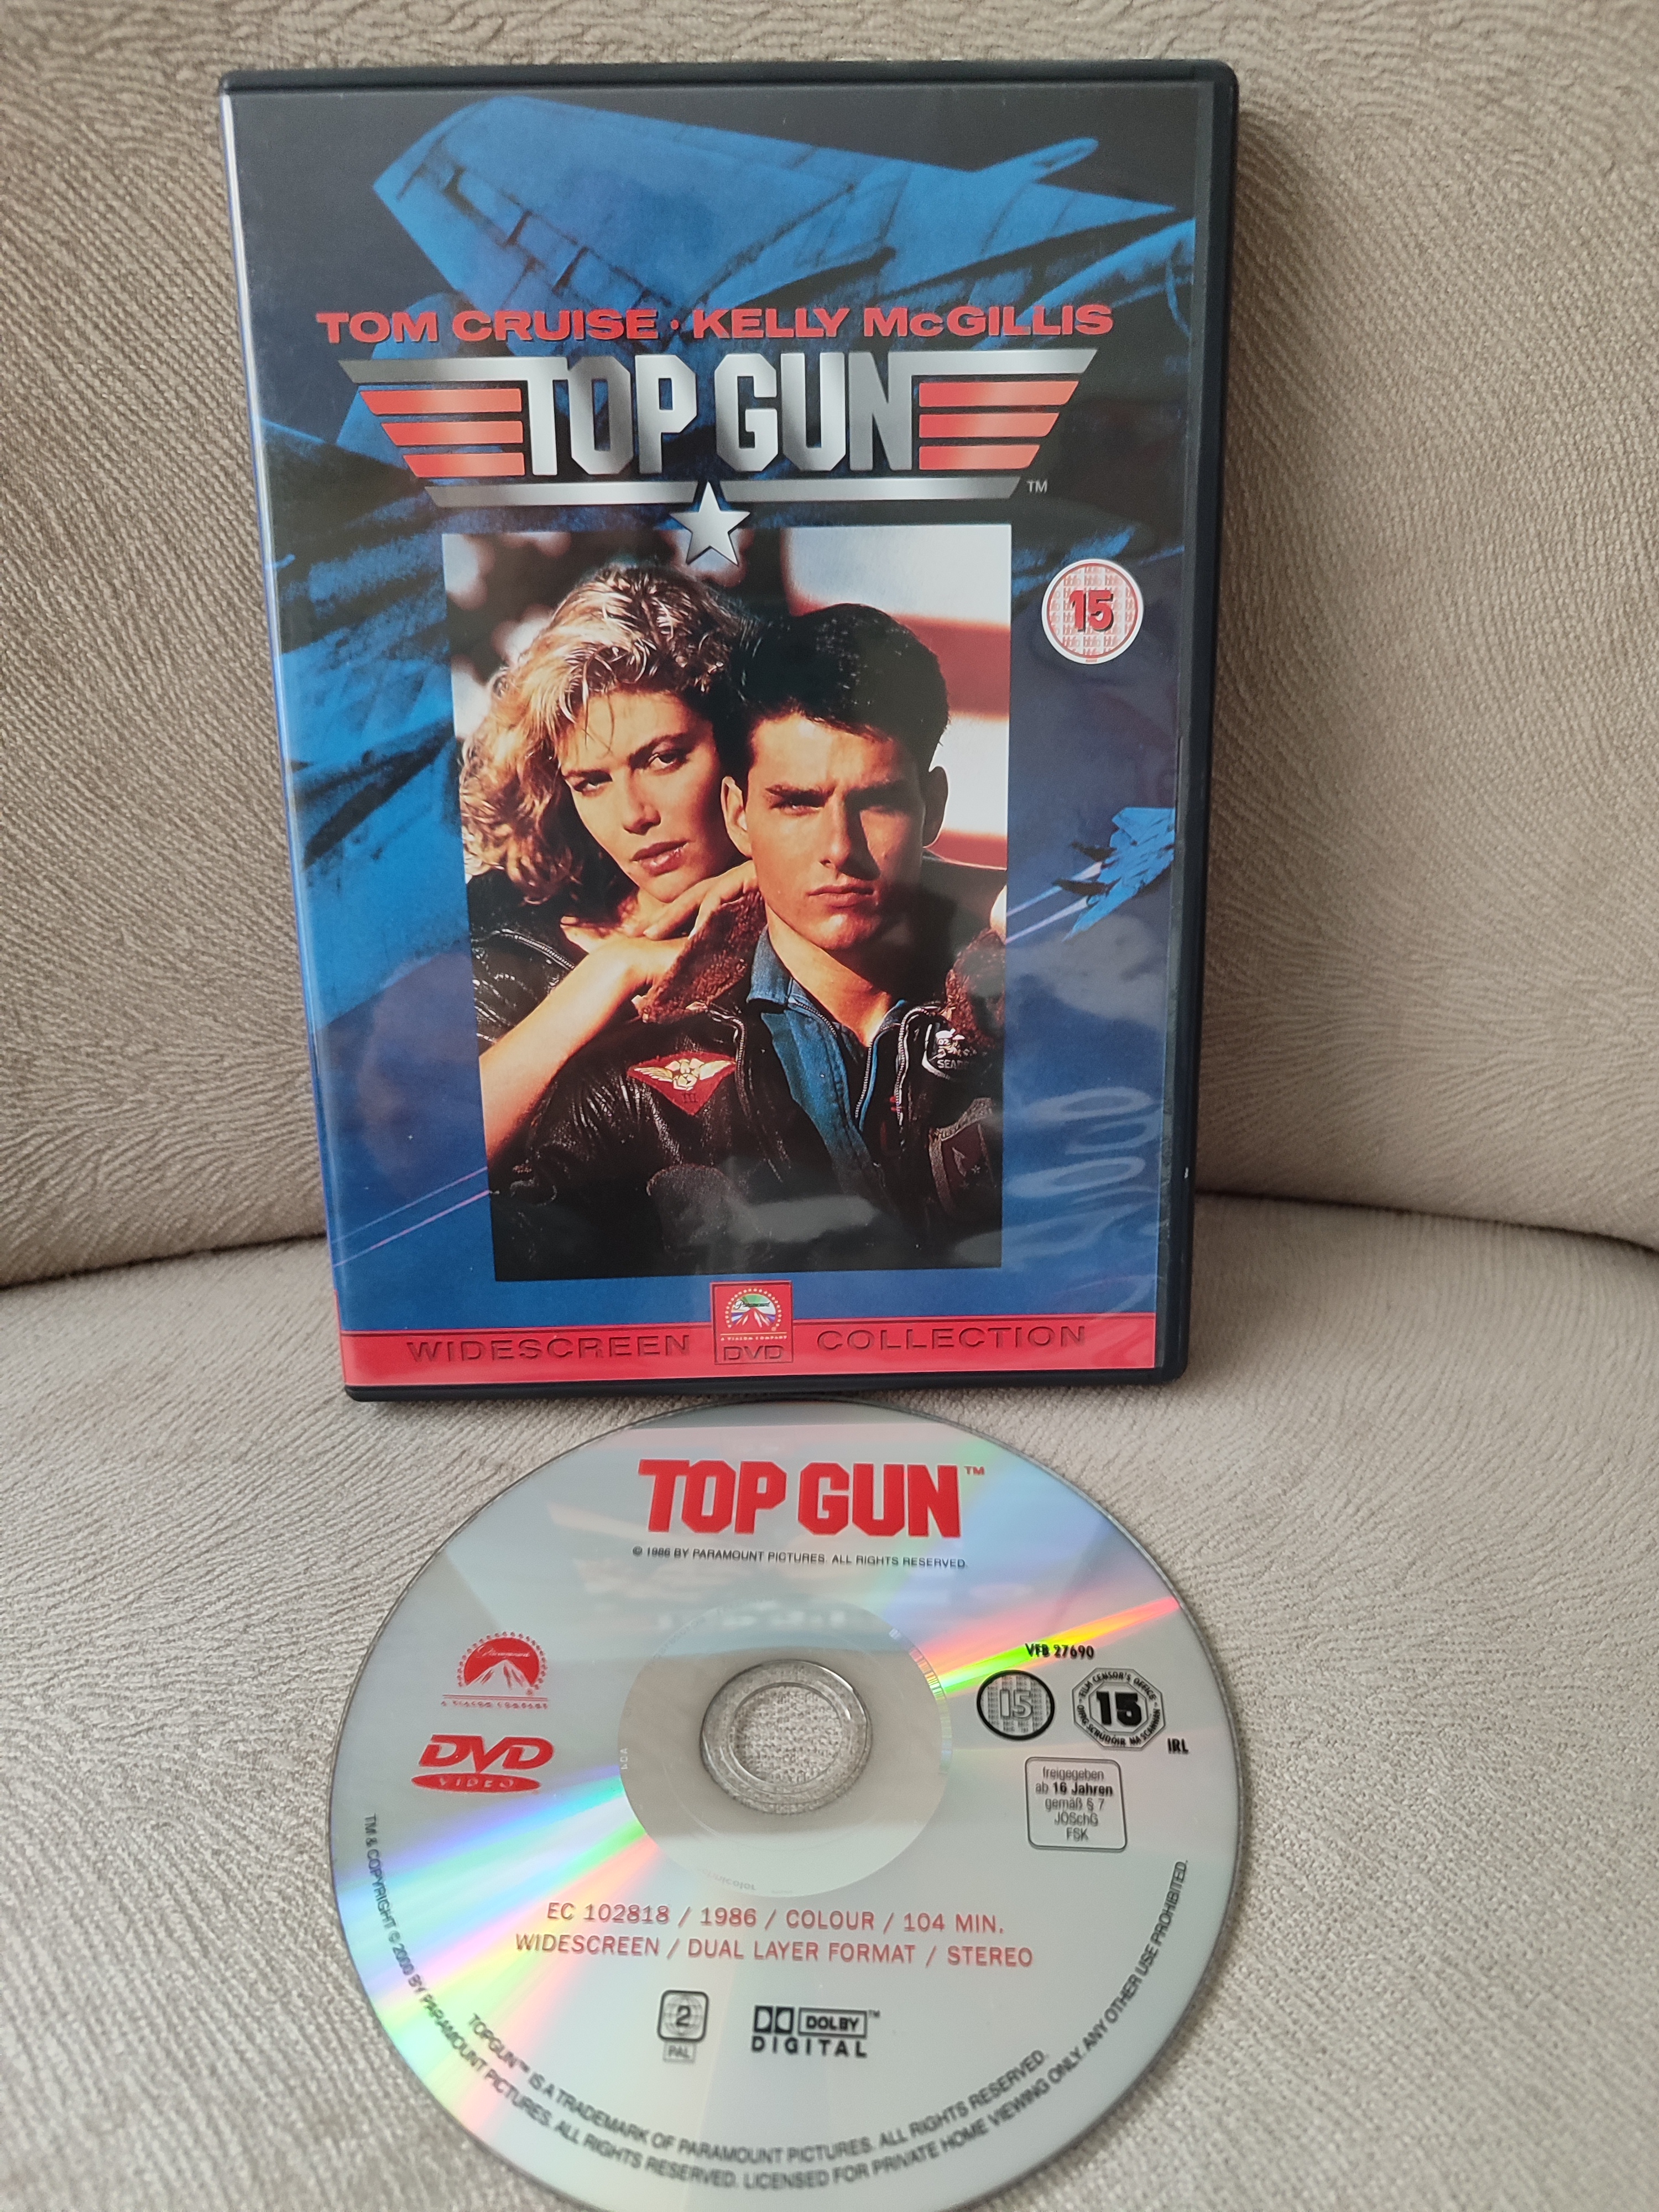 TOP GUN - Tom Cruise  - DVD Film / Yabancı Basım Türkçe Altyazı Vardır - 2. EL